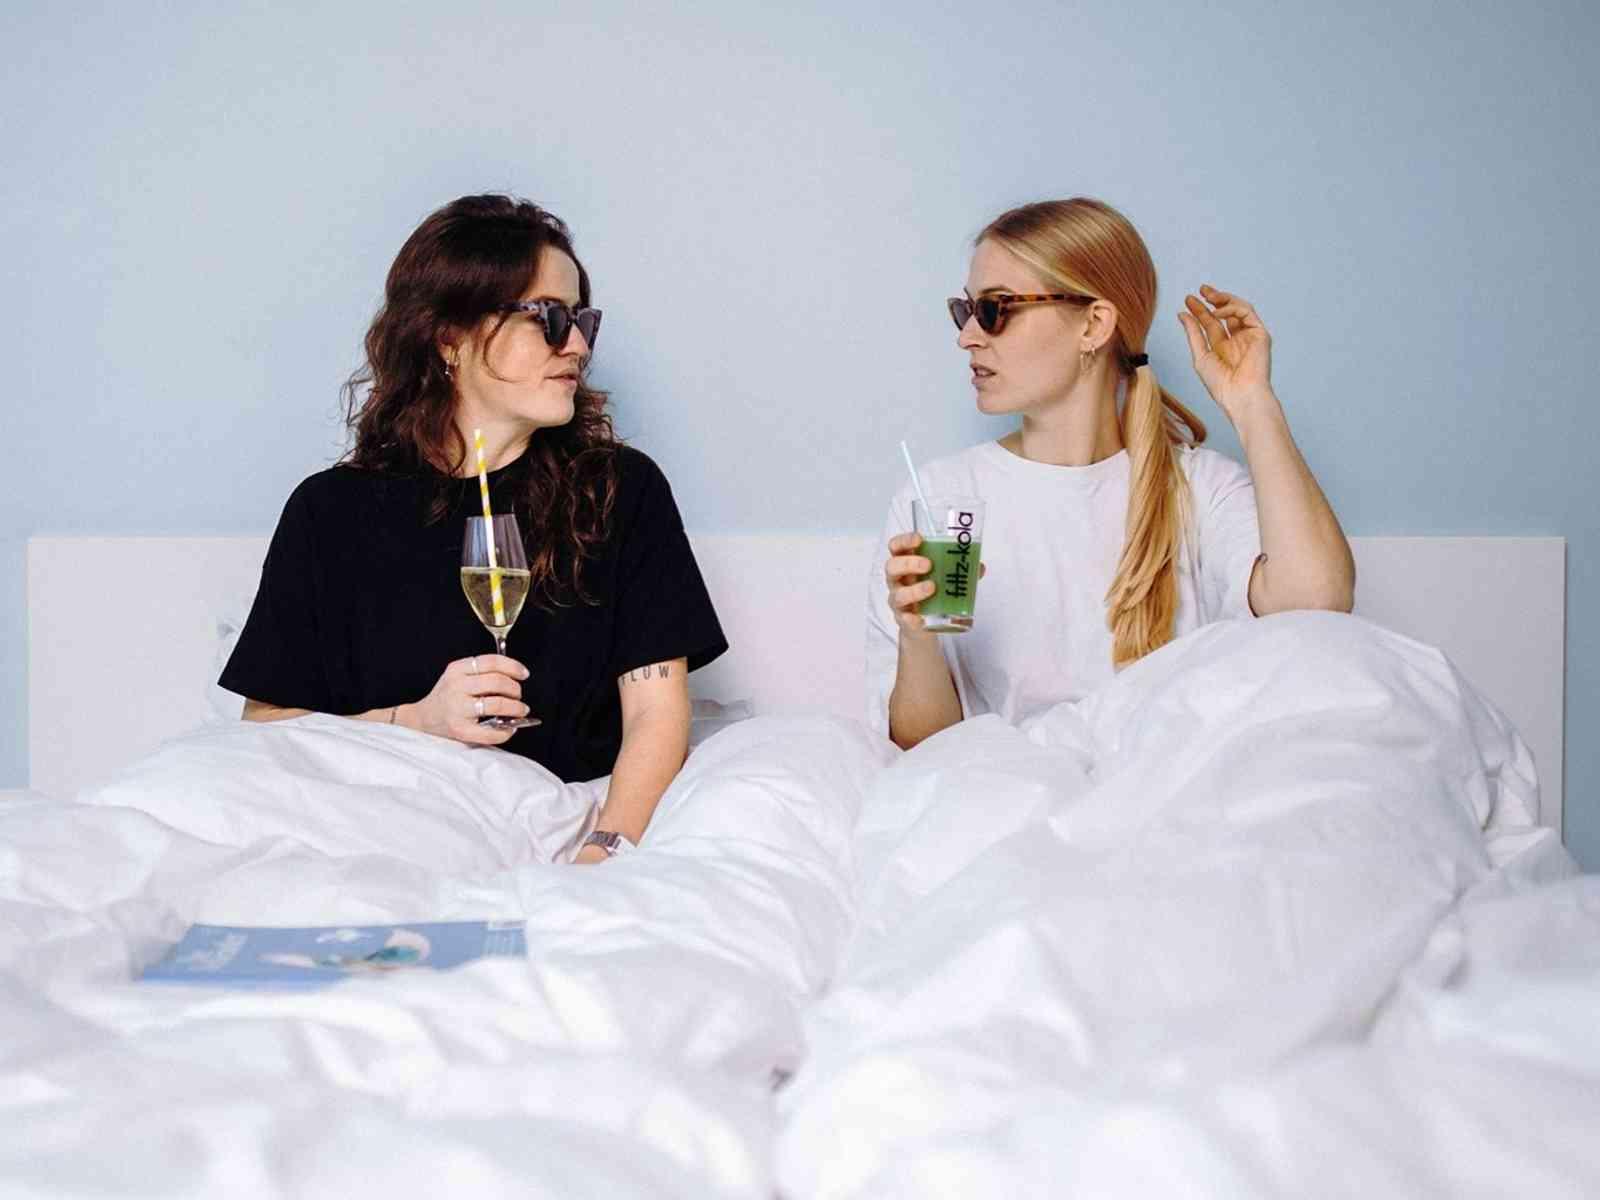 Zwei Personen mit Gläsern im Bett